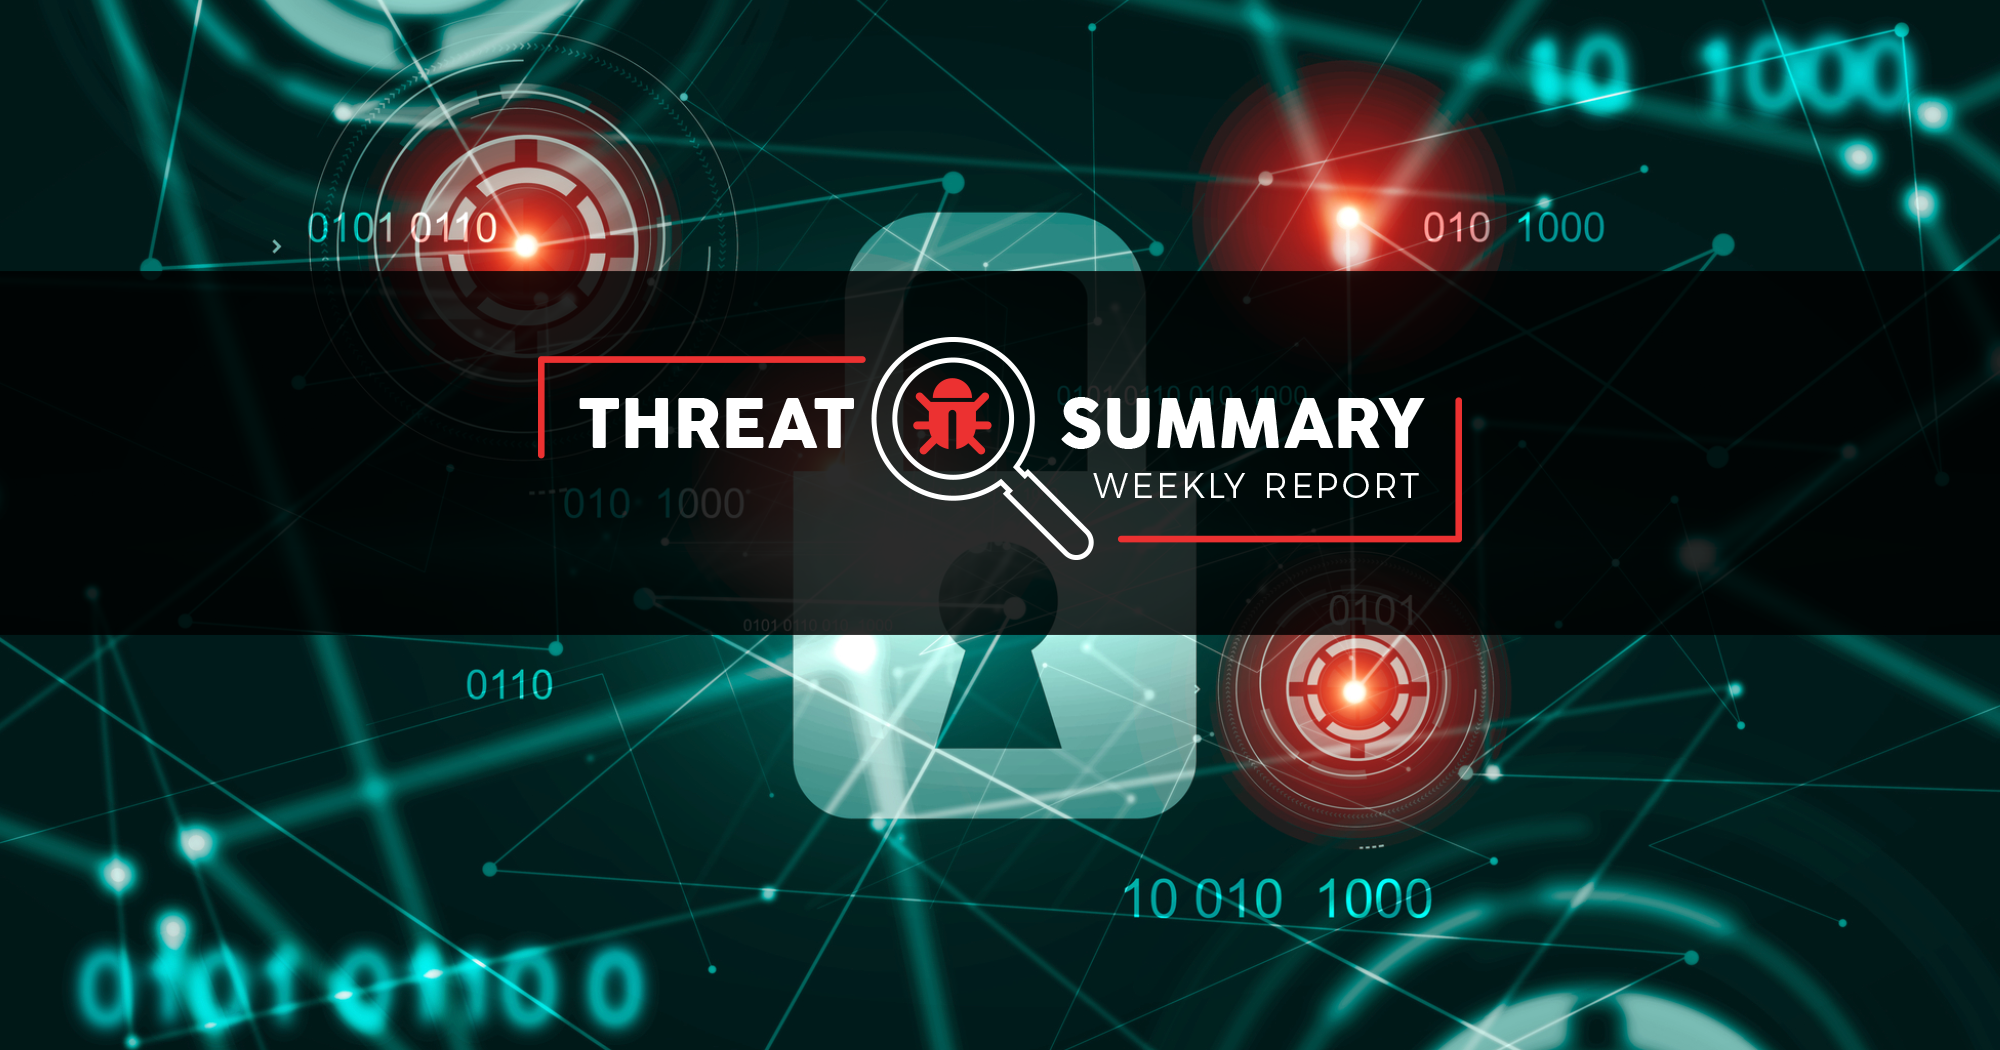 Threat Summary - Week 48, 2019